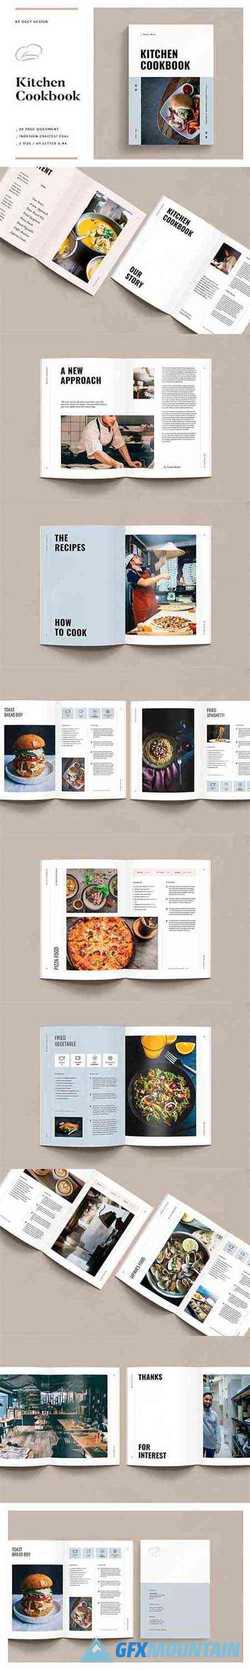 Cookbook Recipe Book 3491544